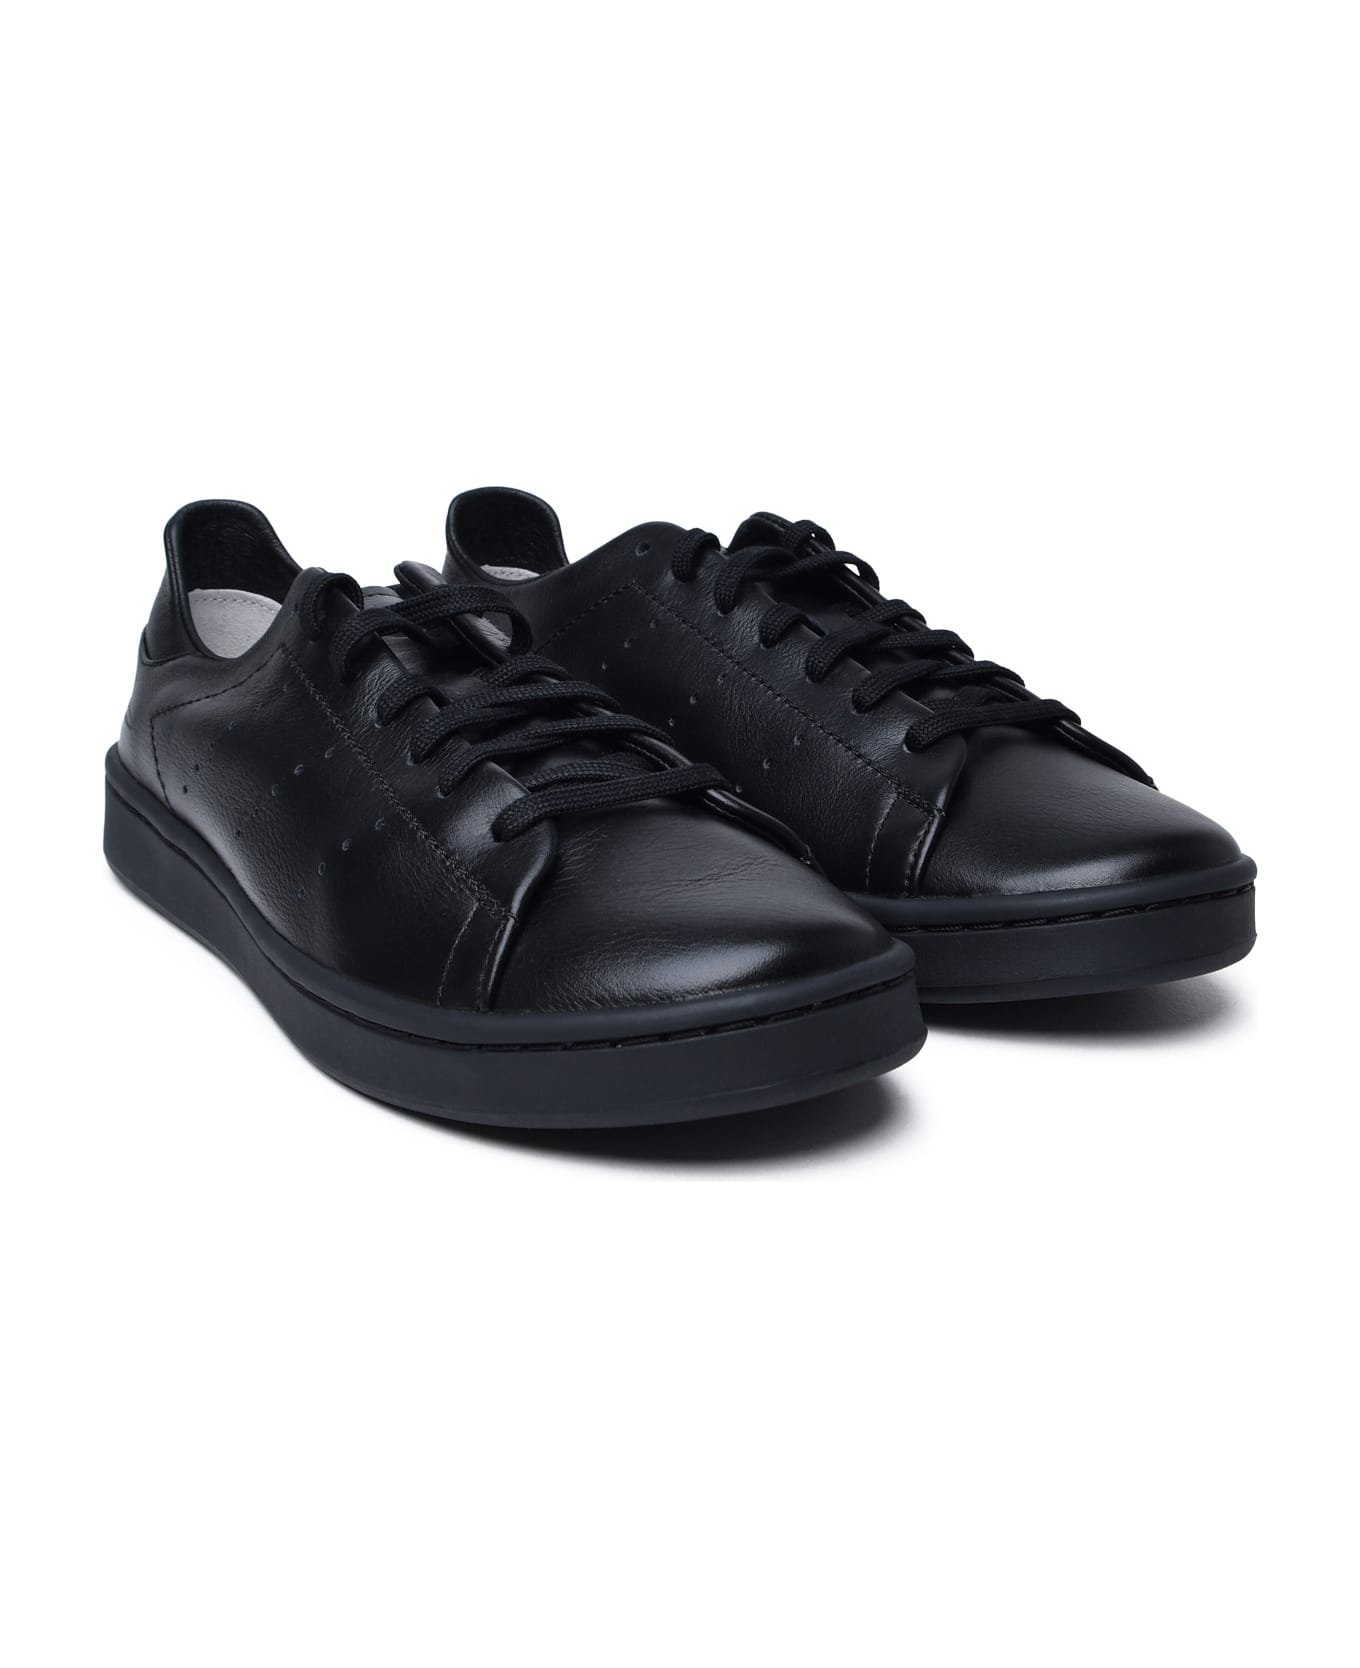 Y-3 Black Leather Sneakers - BLACKBLACKBLACK スニーカー